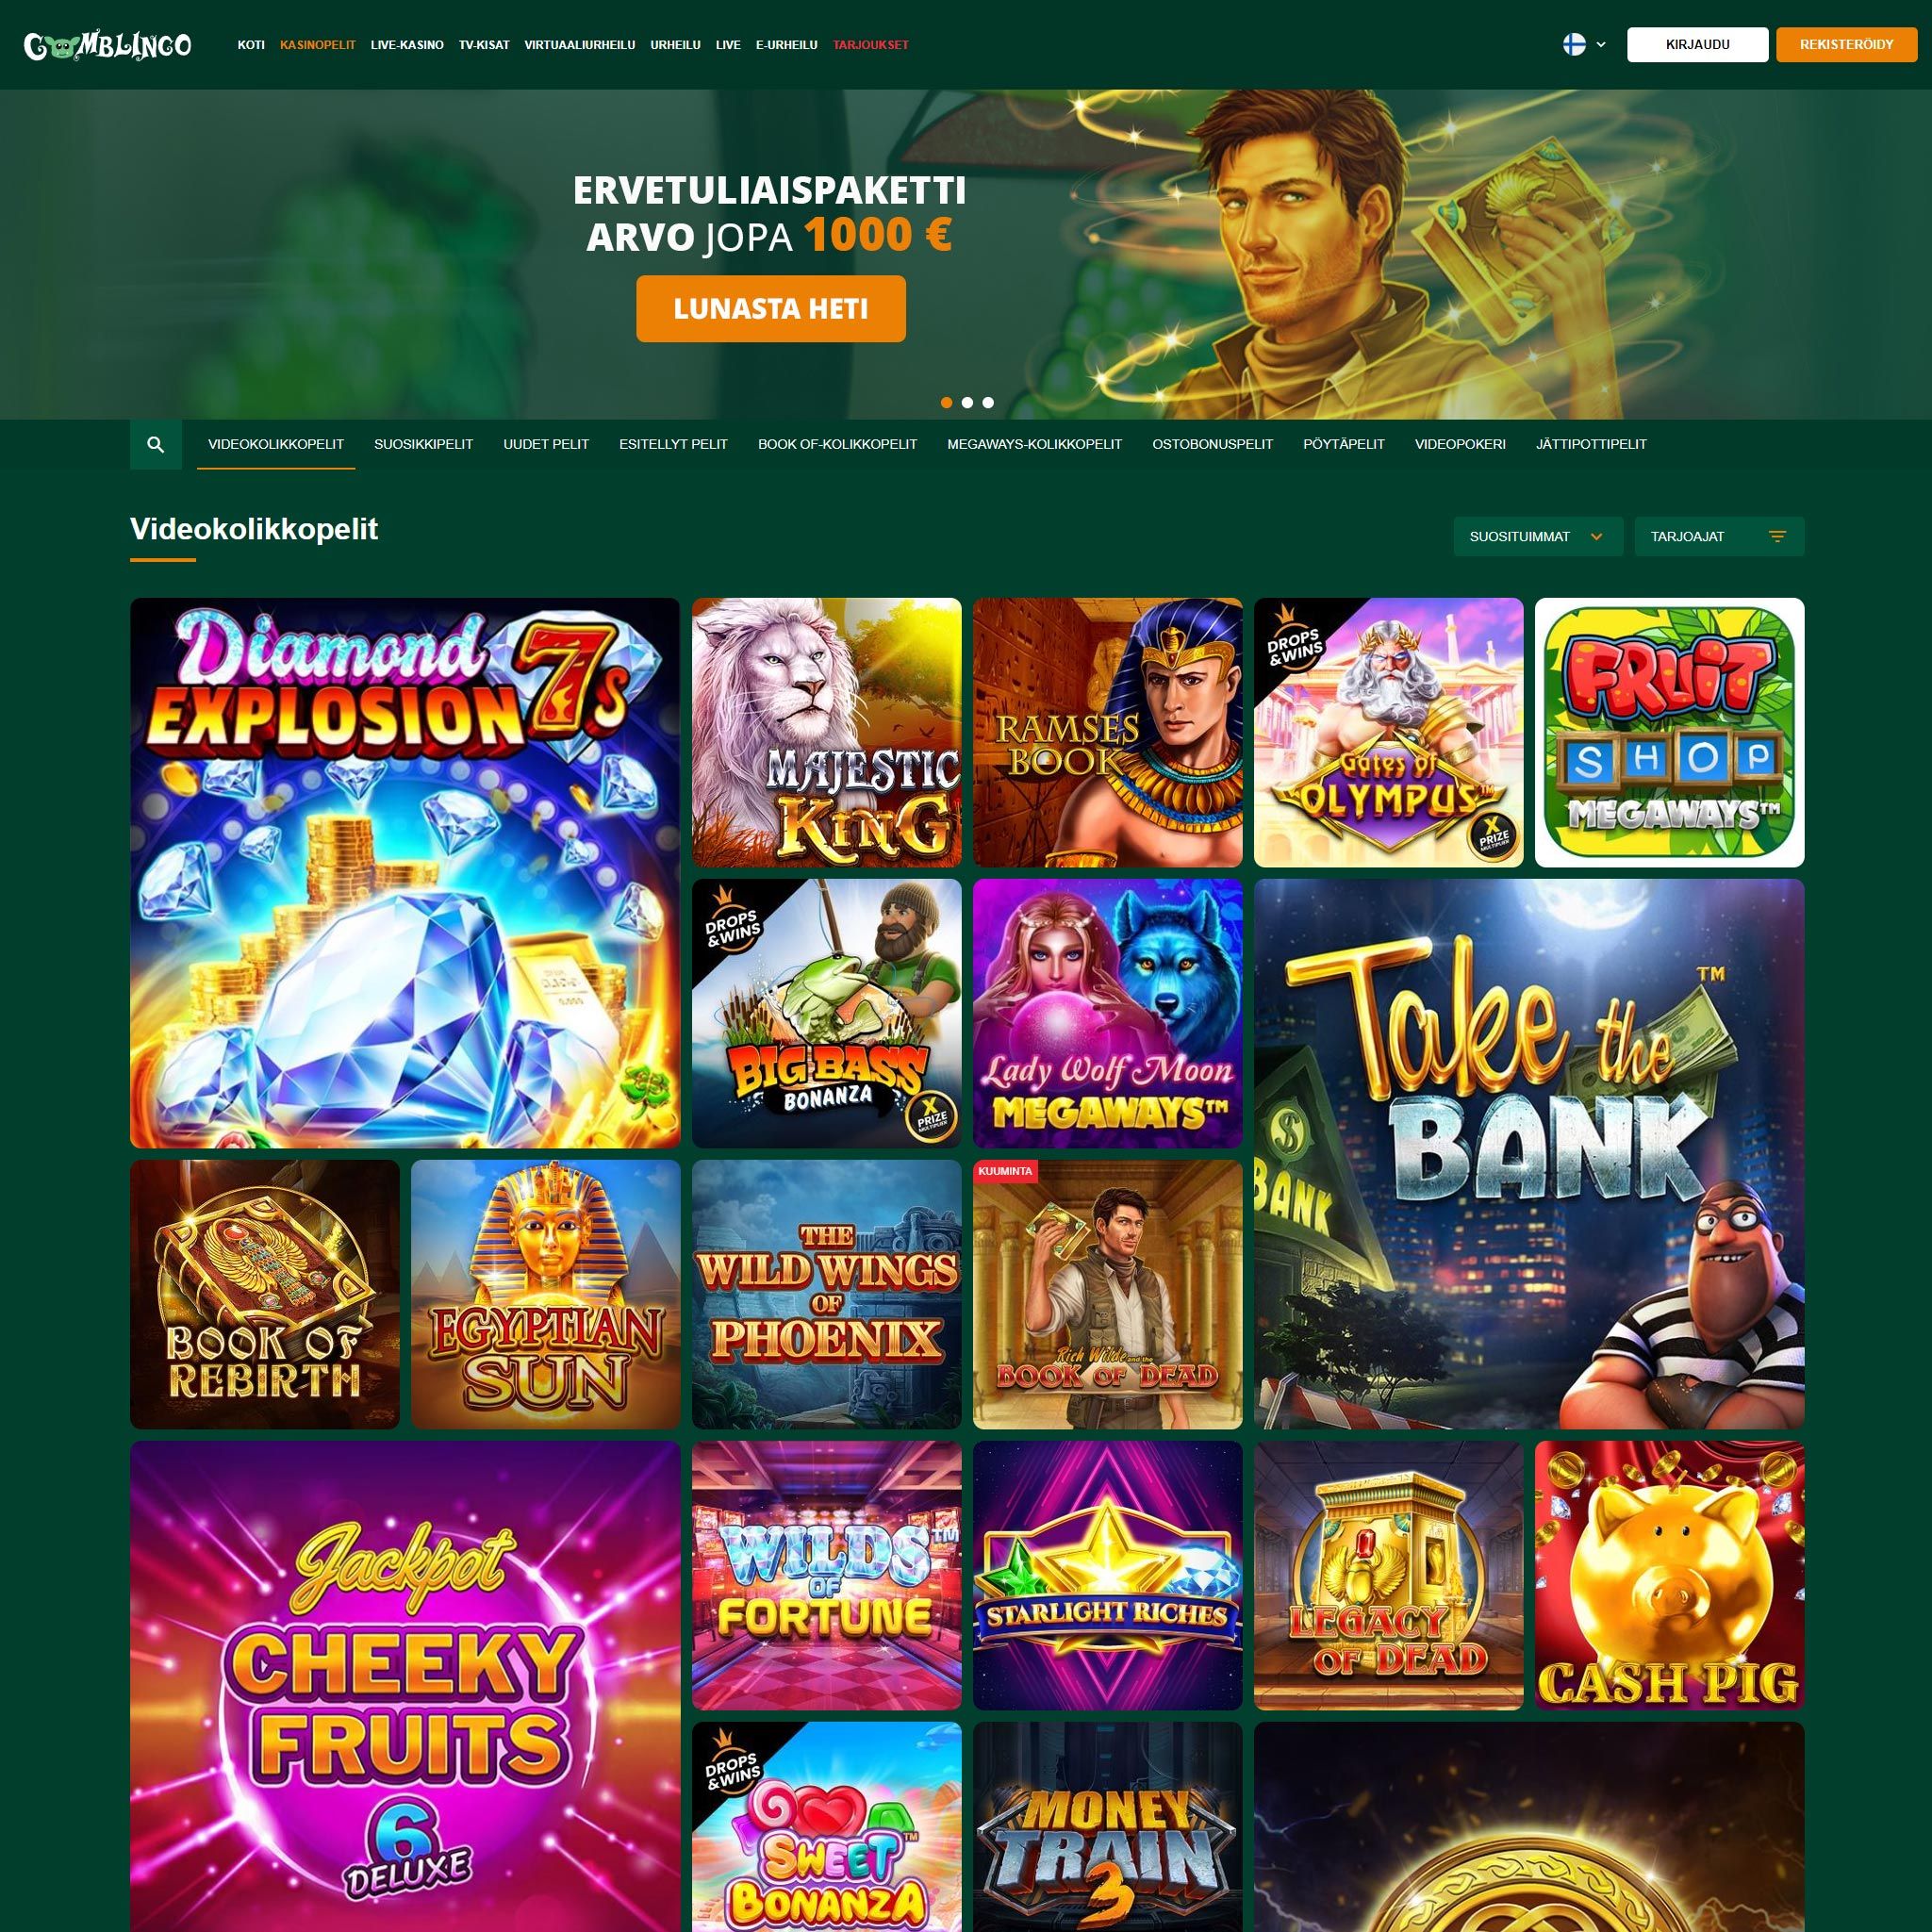 Pelaa netticasino Gomblingo Casino voittaaksesi oikeaa rahaa – oikean rahan online casino! Vertaa kaikki nettikasinot ja löydä parhaat casinot Suomessa.